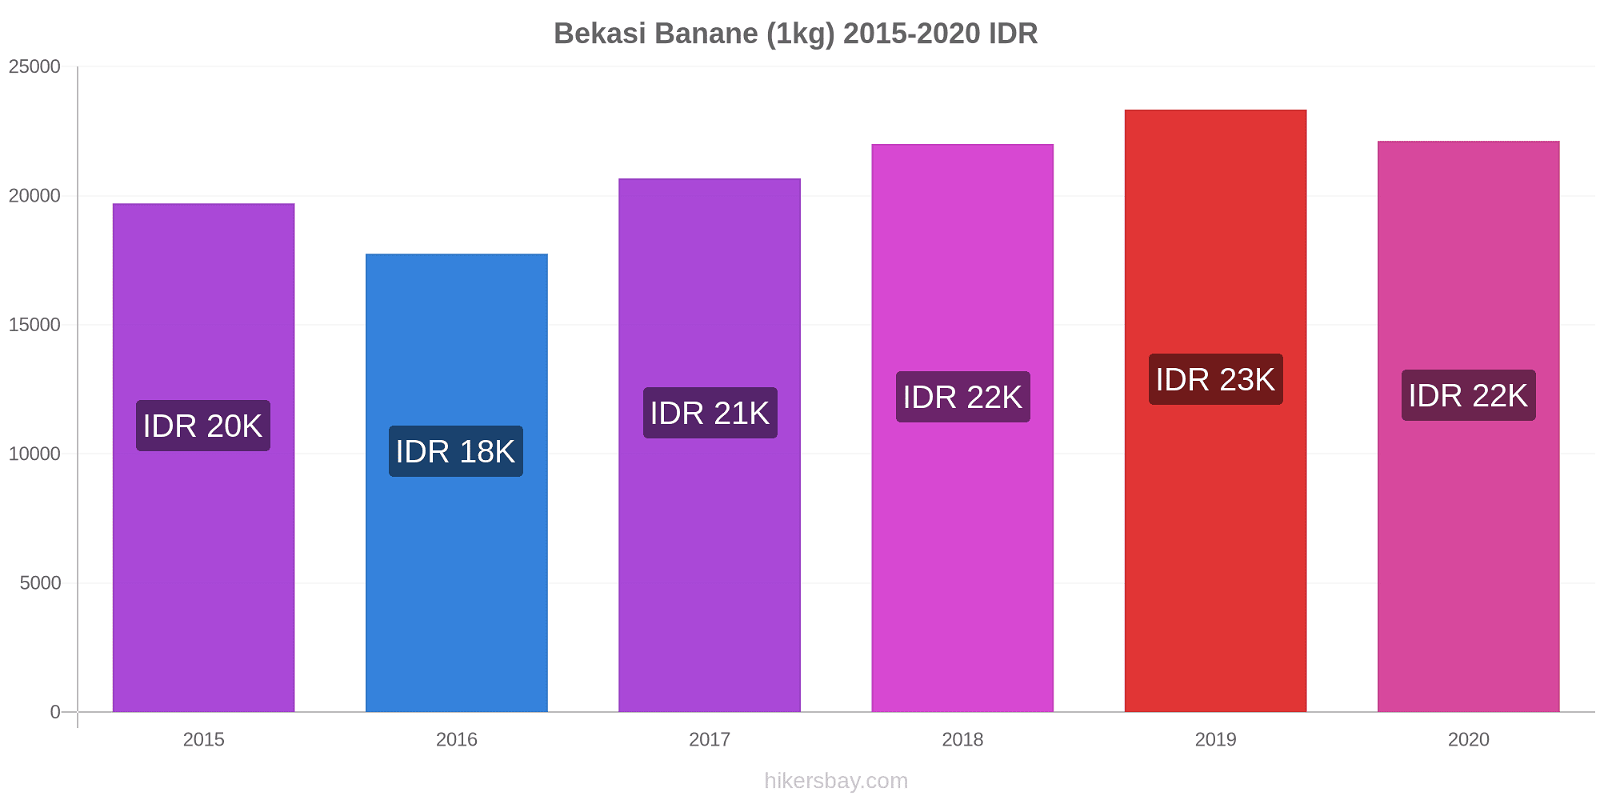 Bekasi variazioni di prezzo Banana (1kg) hikersbay.com